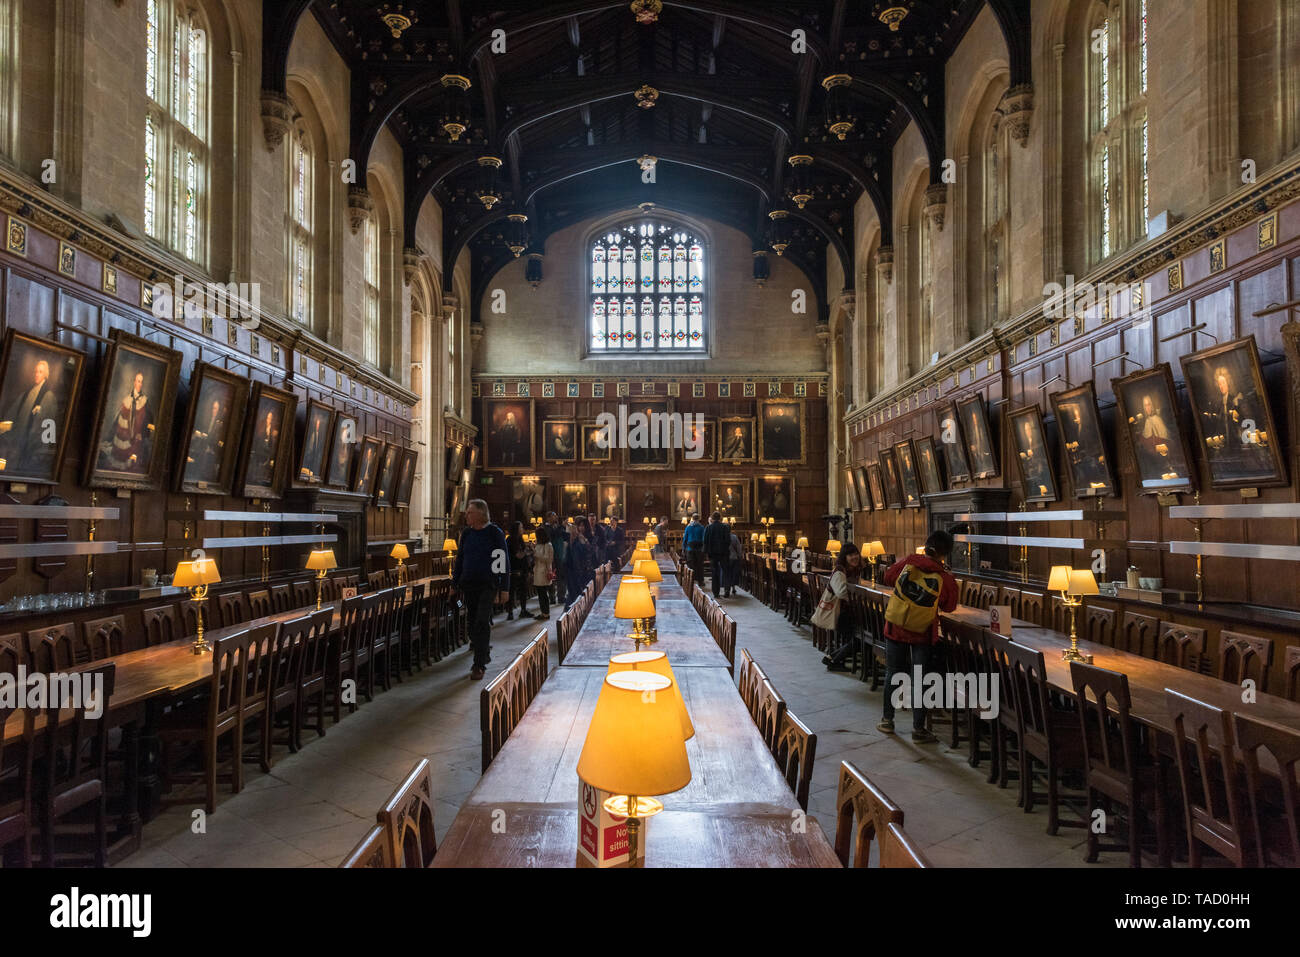 Great hall hogwarts immagini e fotografie stock ad alta risoluzione - Alamy